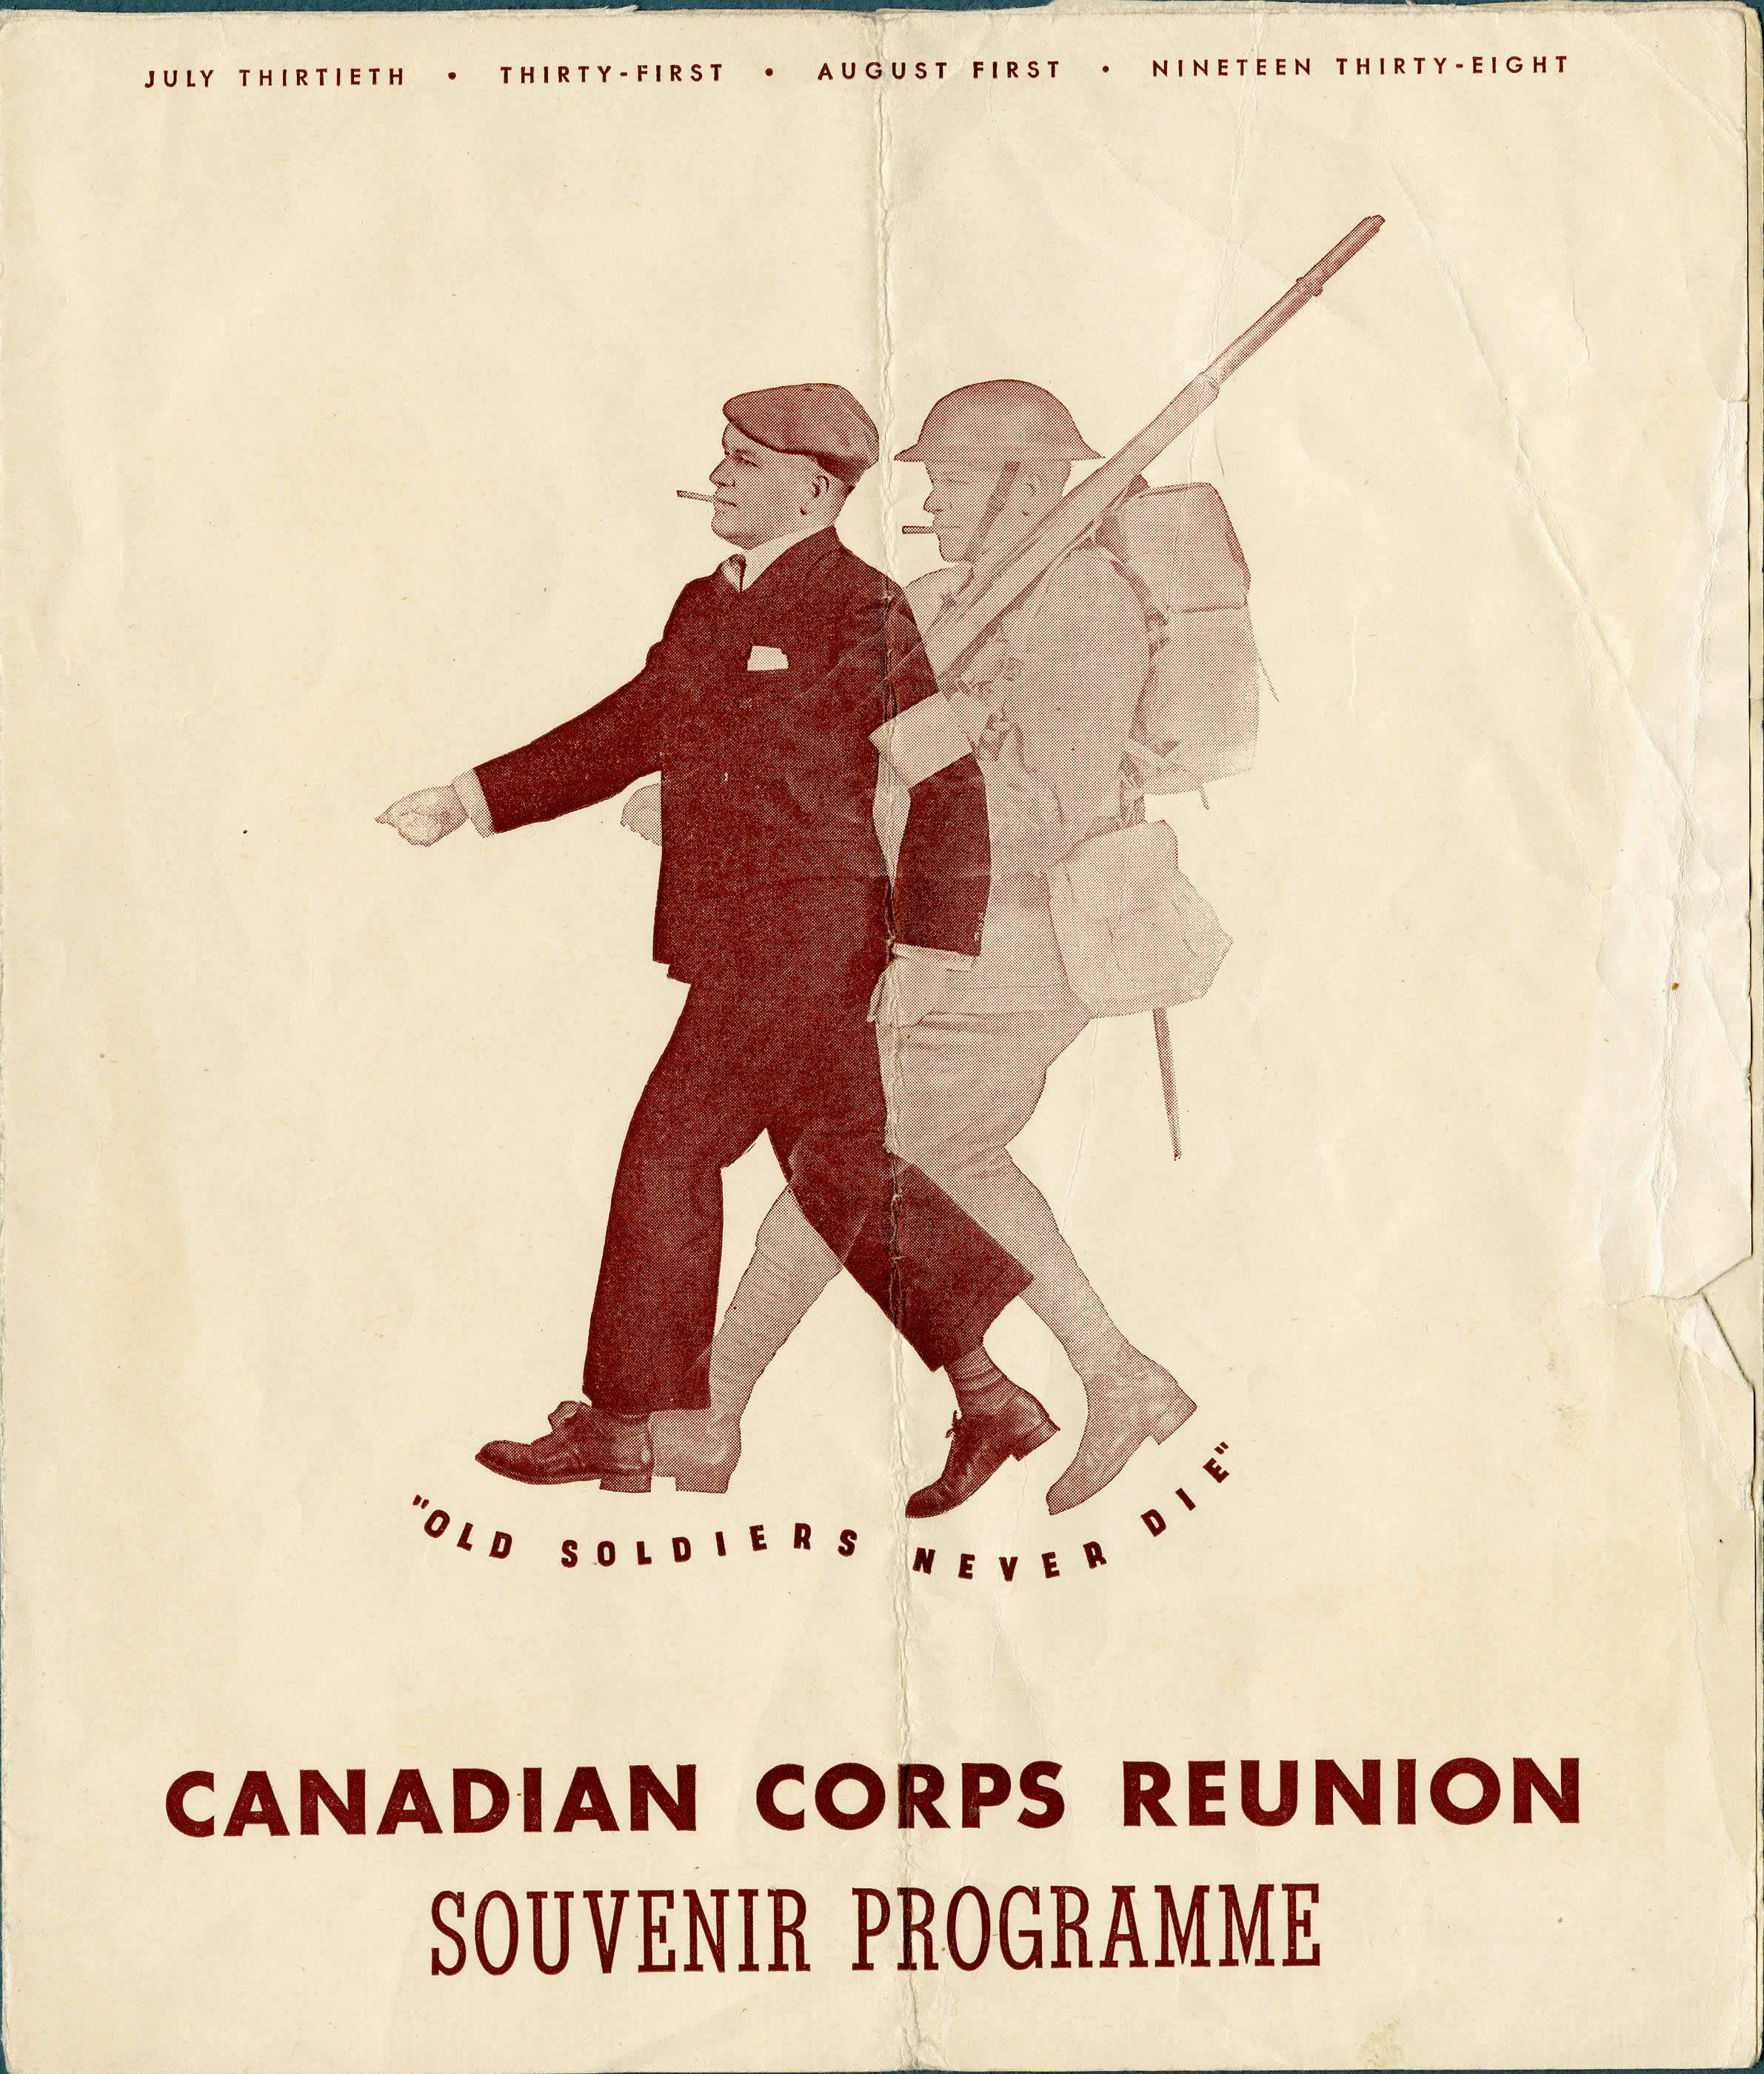 Réunion du Corps canadien